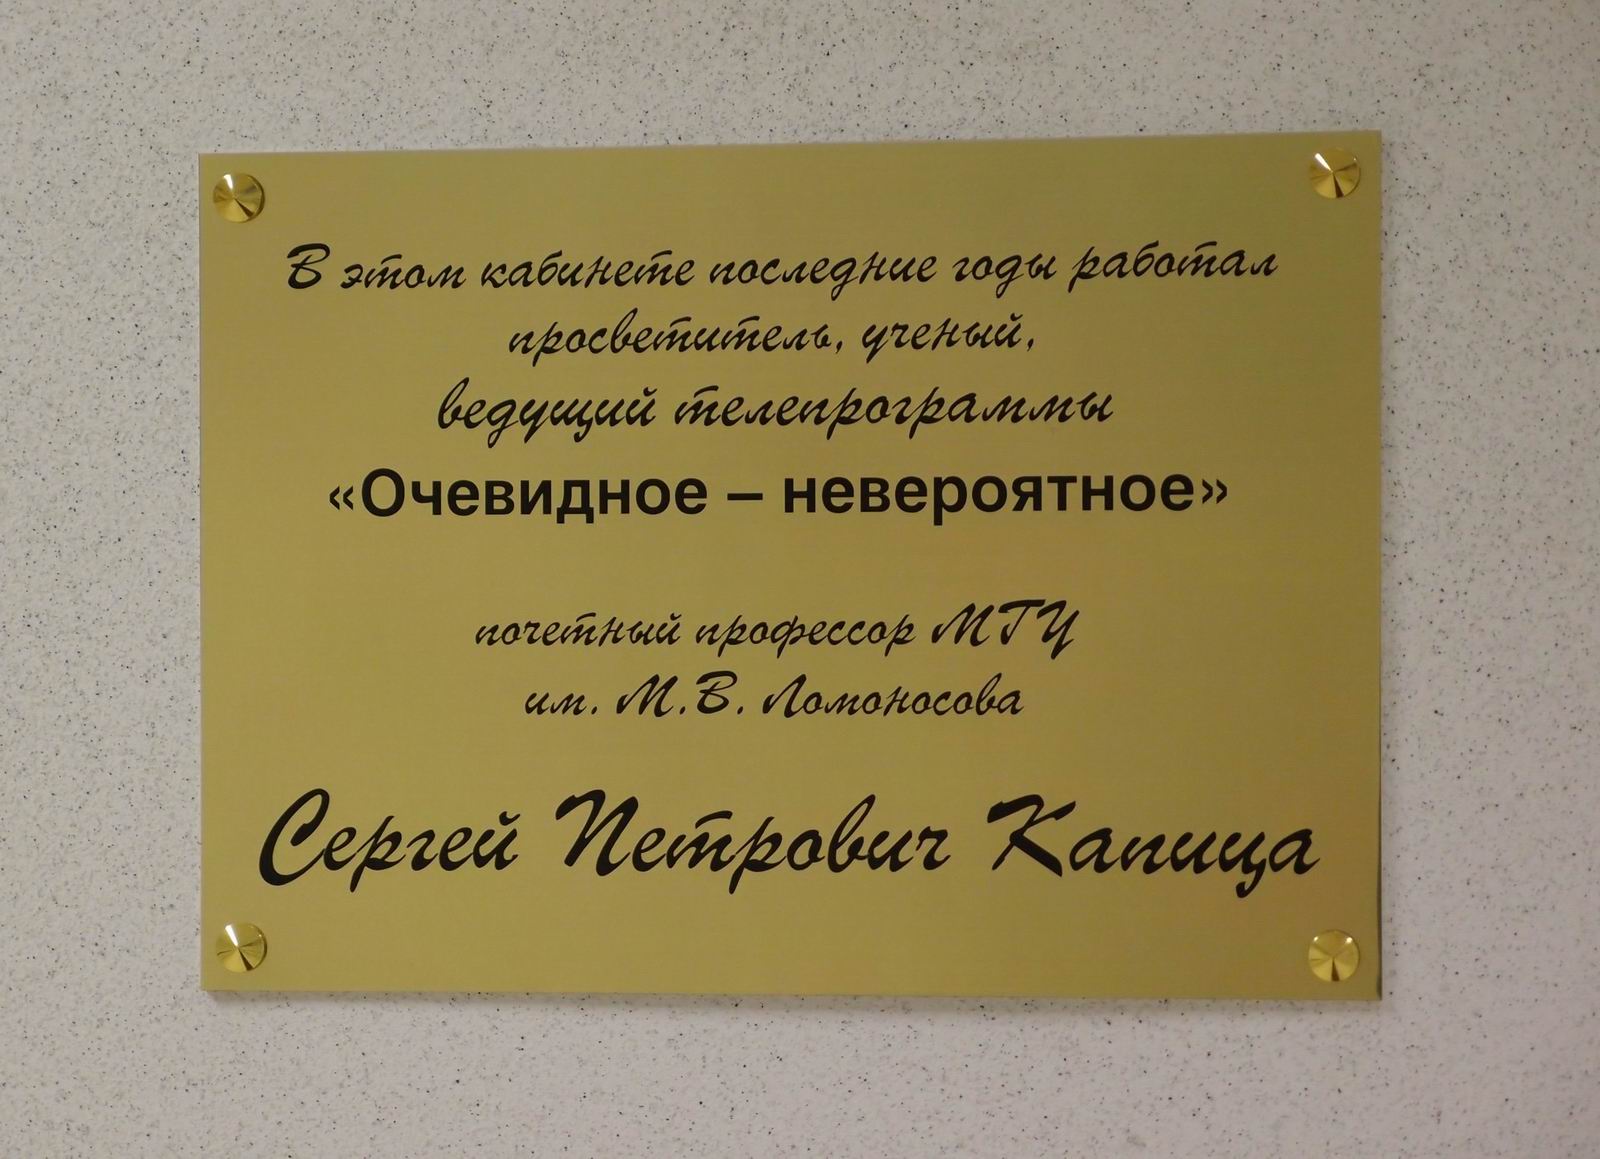 Мемориальная доска Капице С.П. (1928–2012), на Ленинских горах, владение 1, строение 46, открыта 14.2.2014.